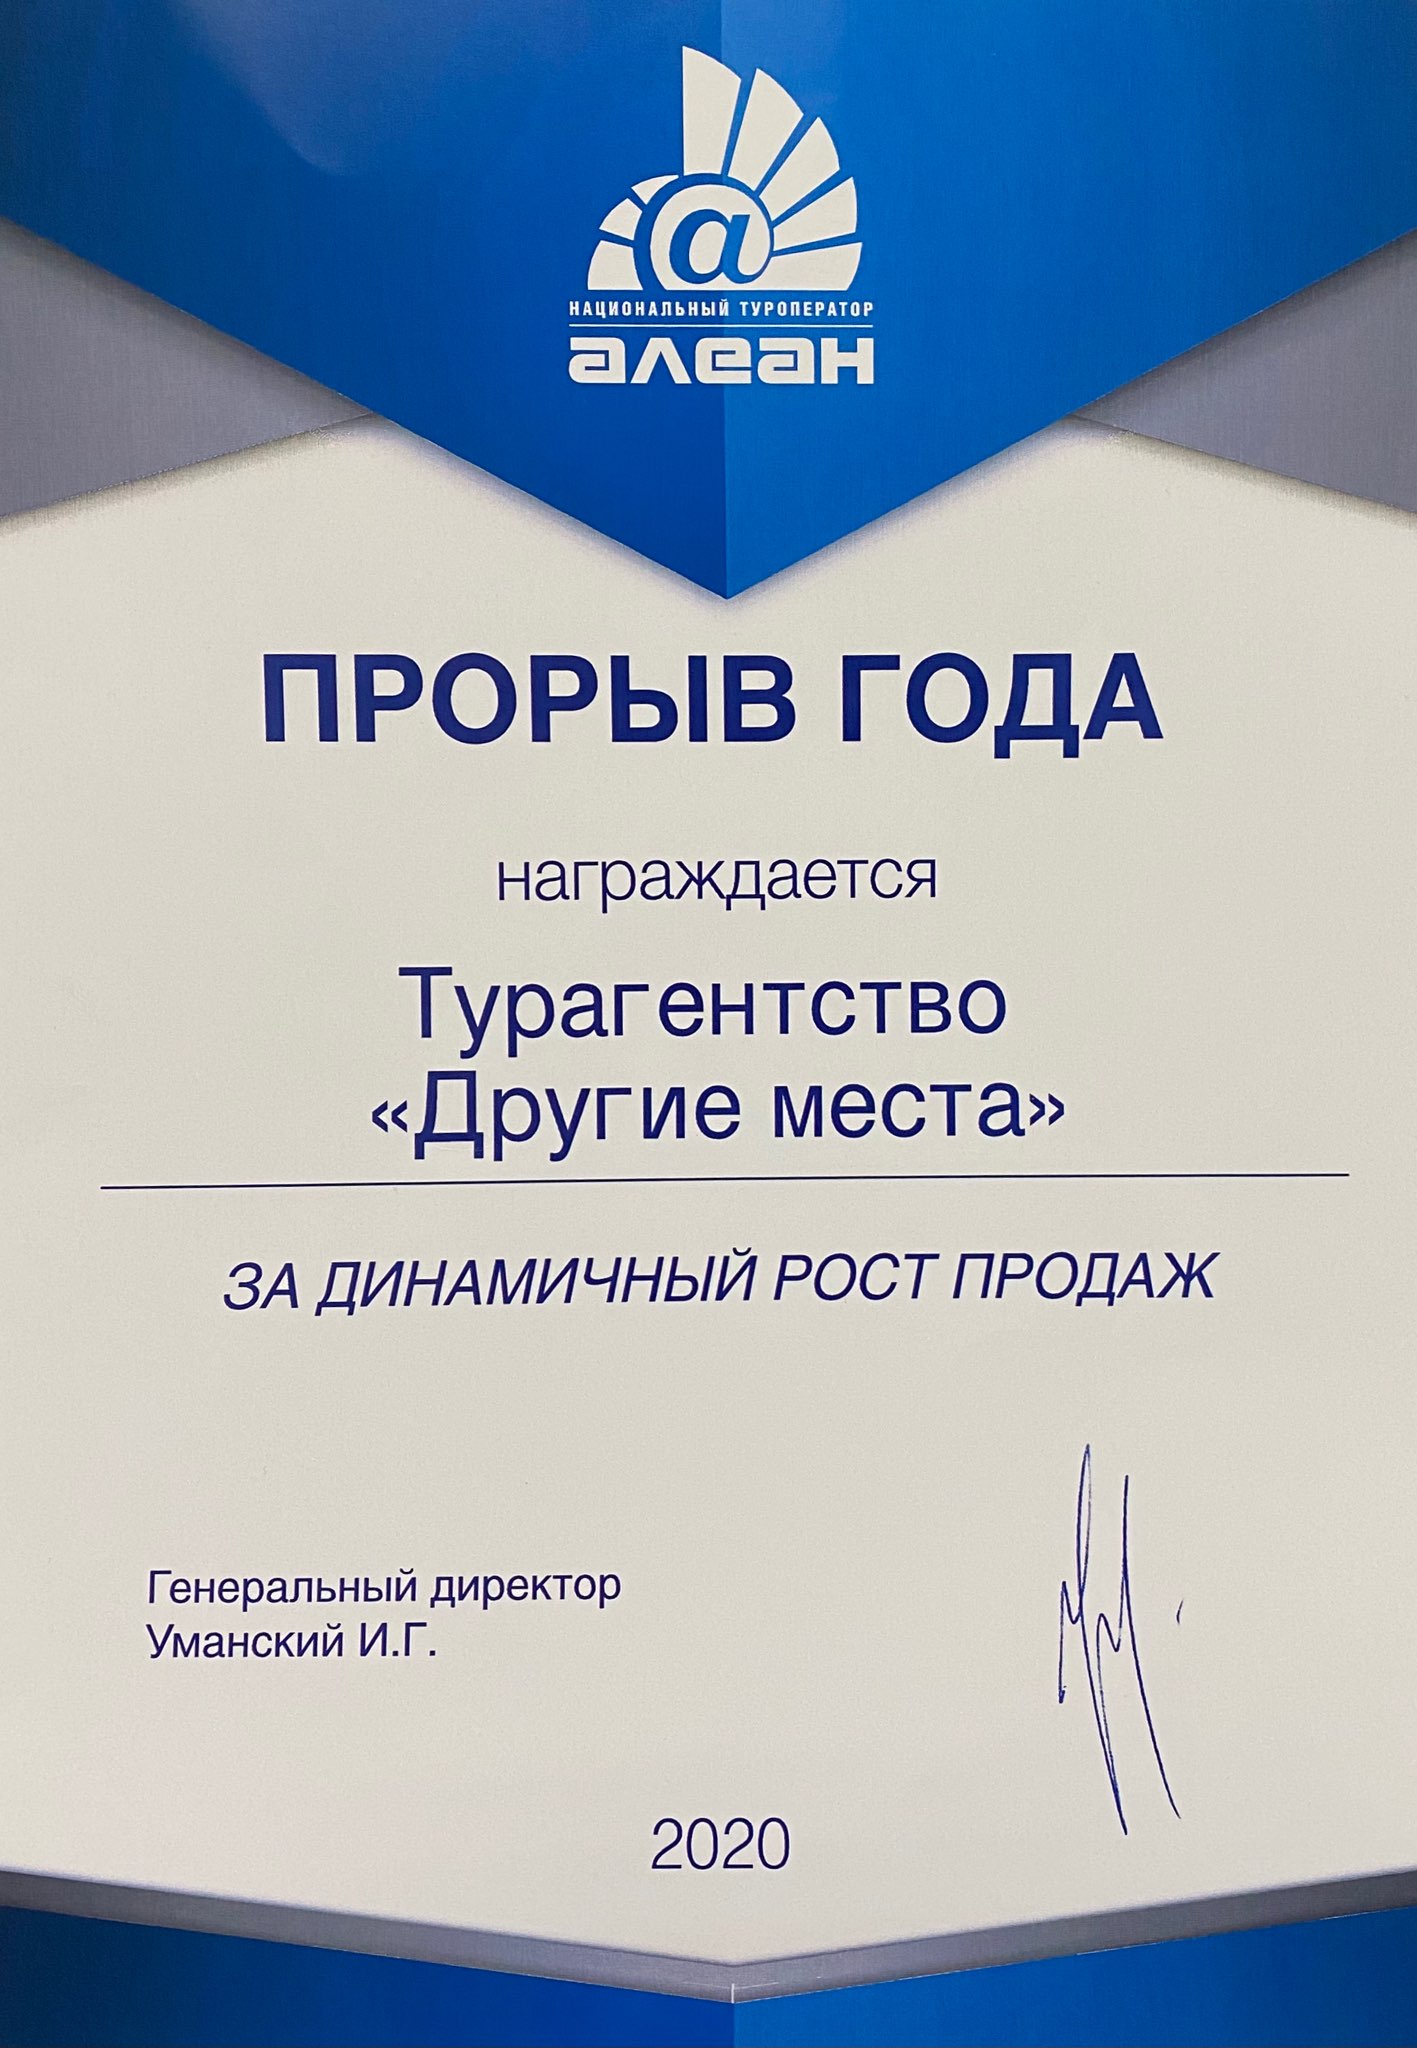 Сертификат "Прорыв года Алеан 2020"